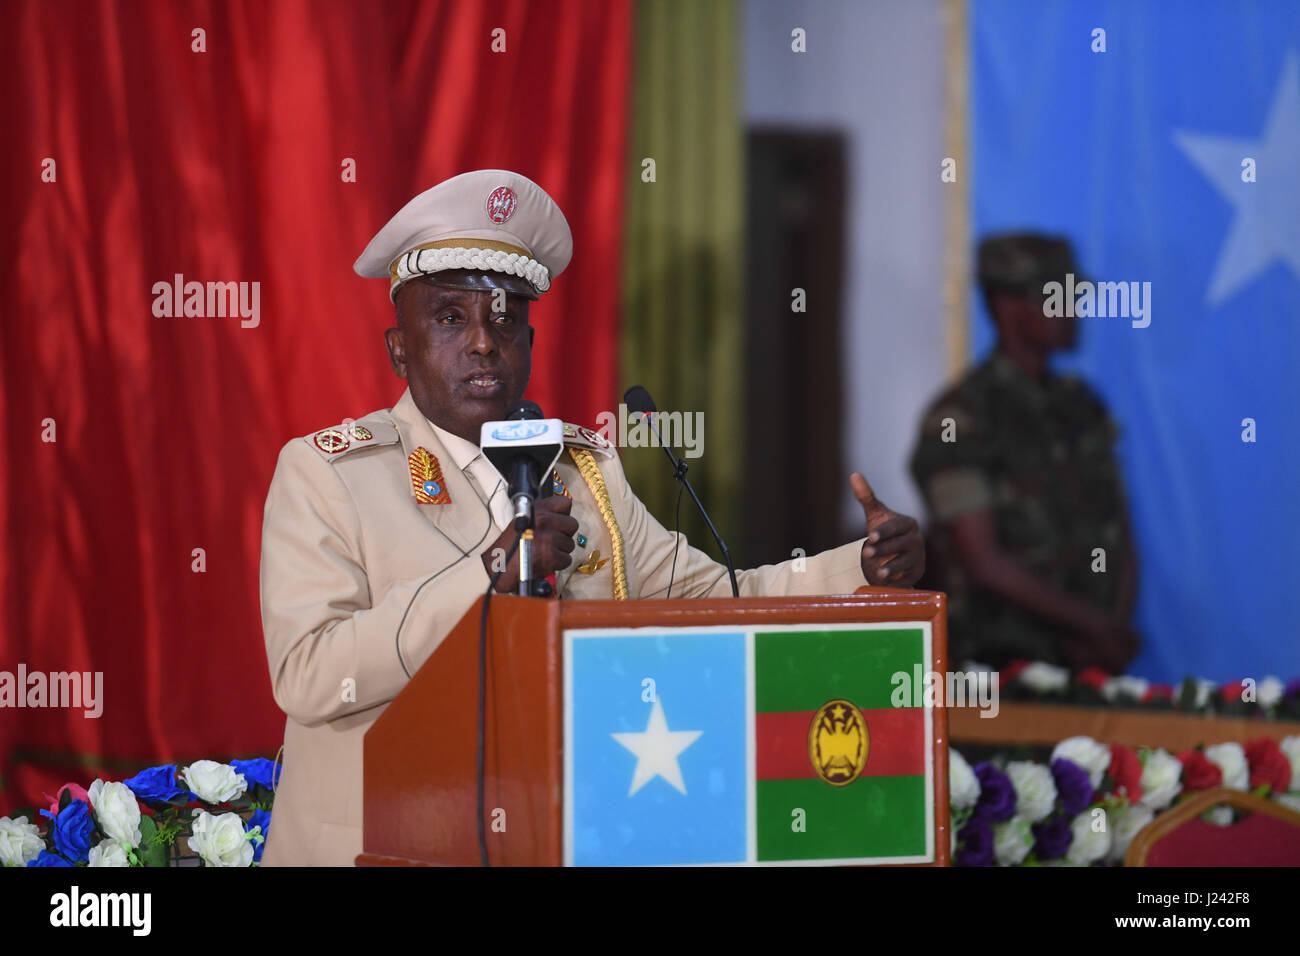 Chef der somalischen Streitkräfte, die General Mohamed Ahmed Jimaale während einer Zeremonie anlässlich des 57. Jahrestages der somalischen Nationalarmee anlässlich des Verteidigungsministeriums 12. April 2017 in Mogadischu, Somalia spricht. Stockfoto